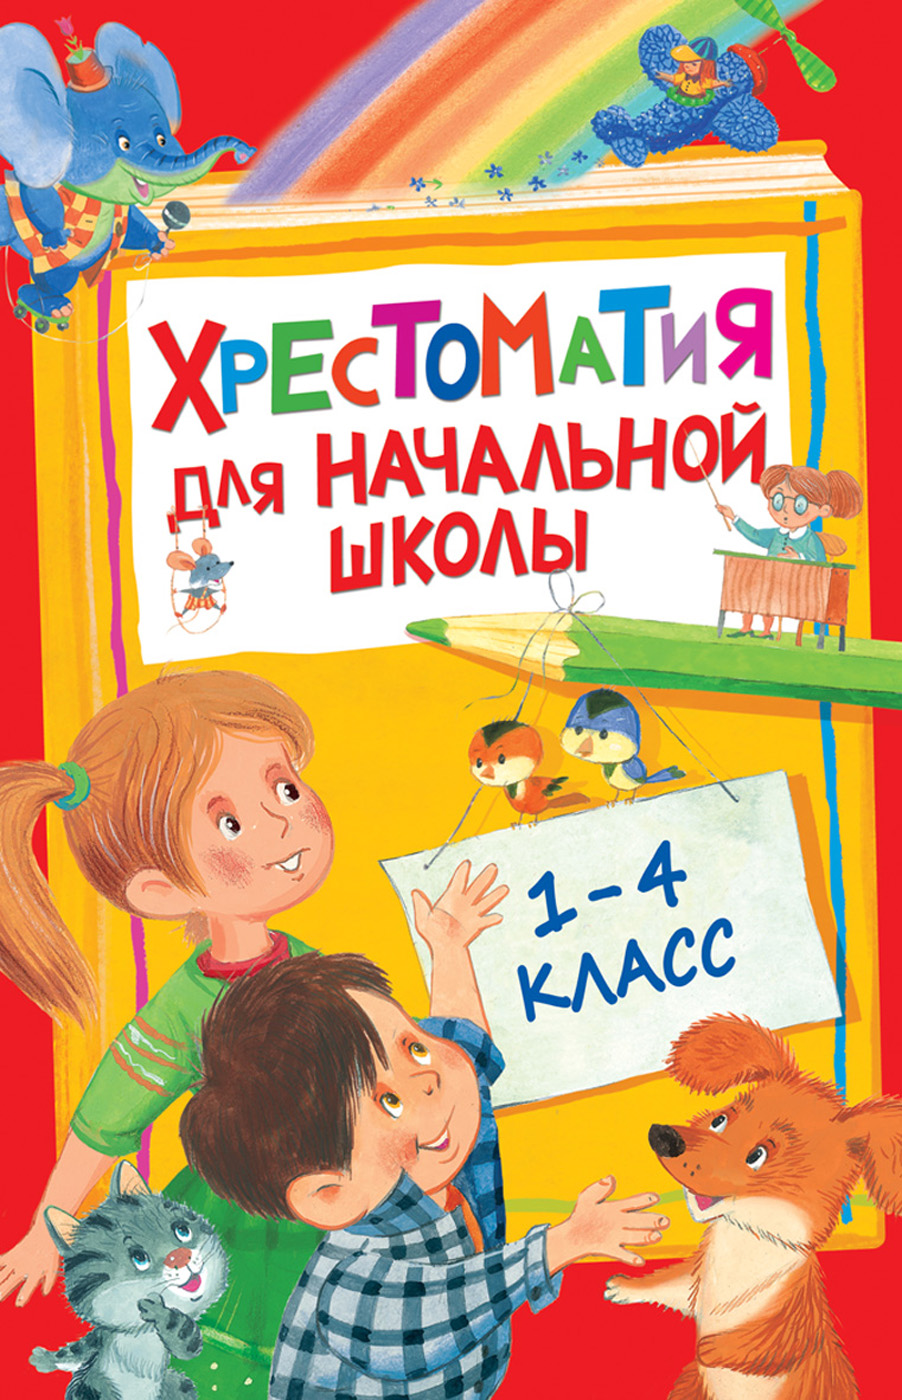 Книга 28524 Хрестоматия для начальной школы 1-4 класс Росмэн - Волгоград 